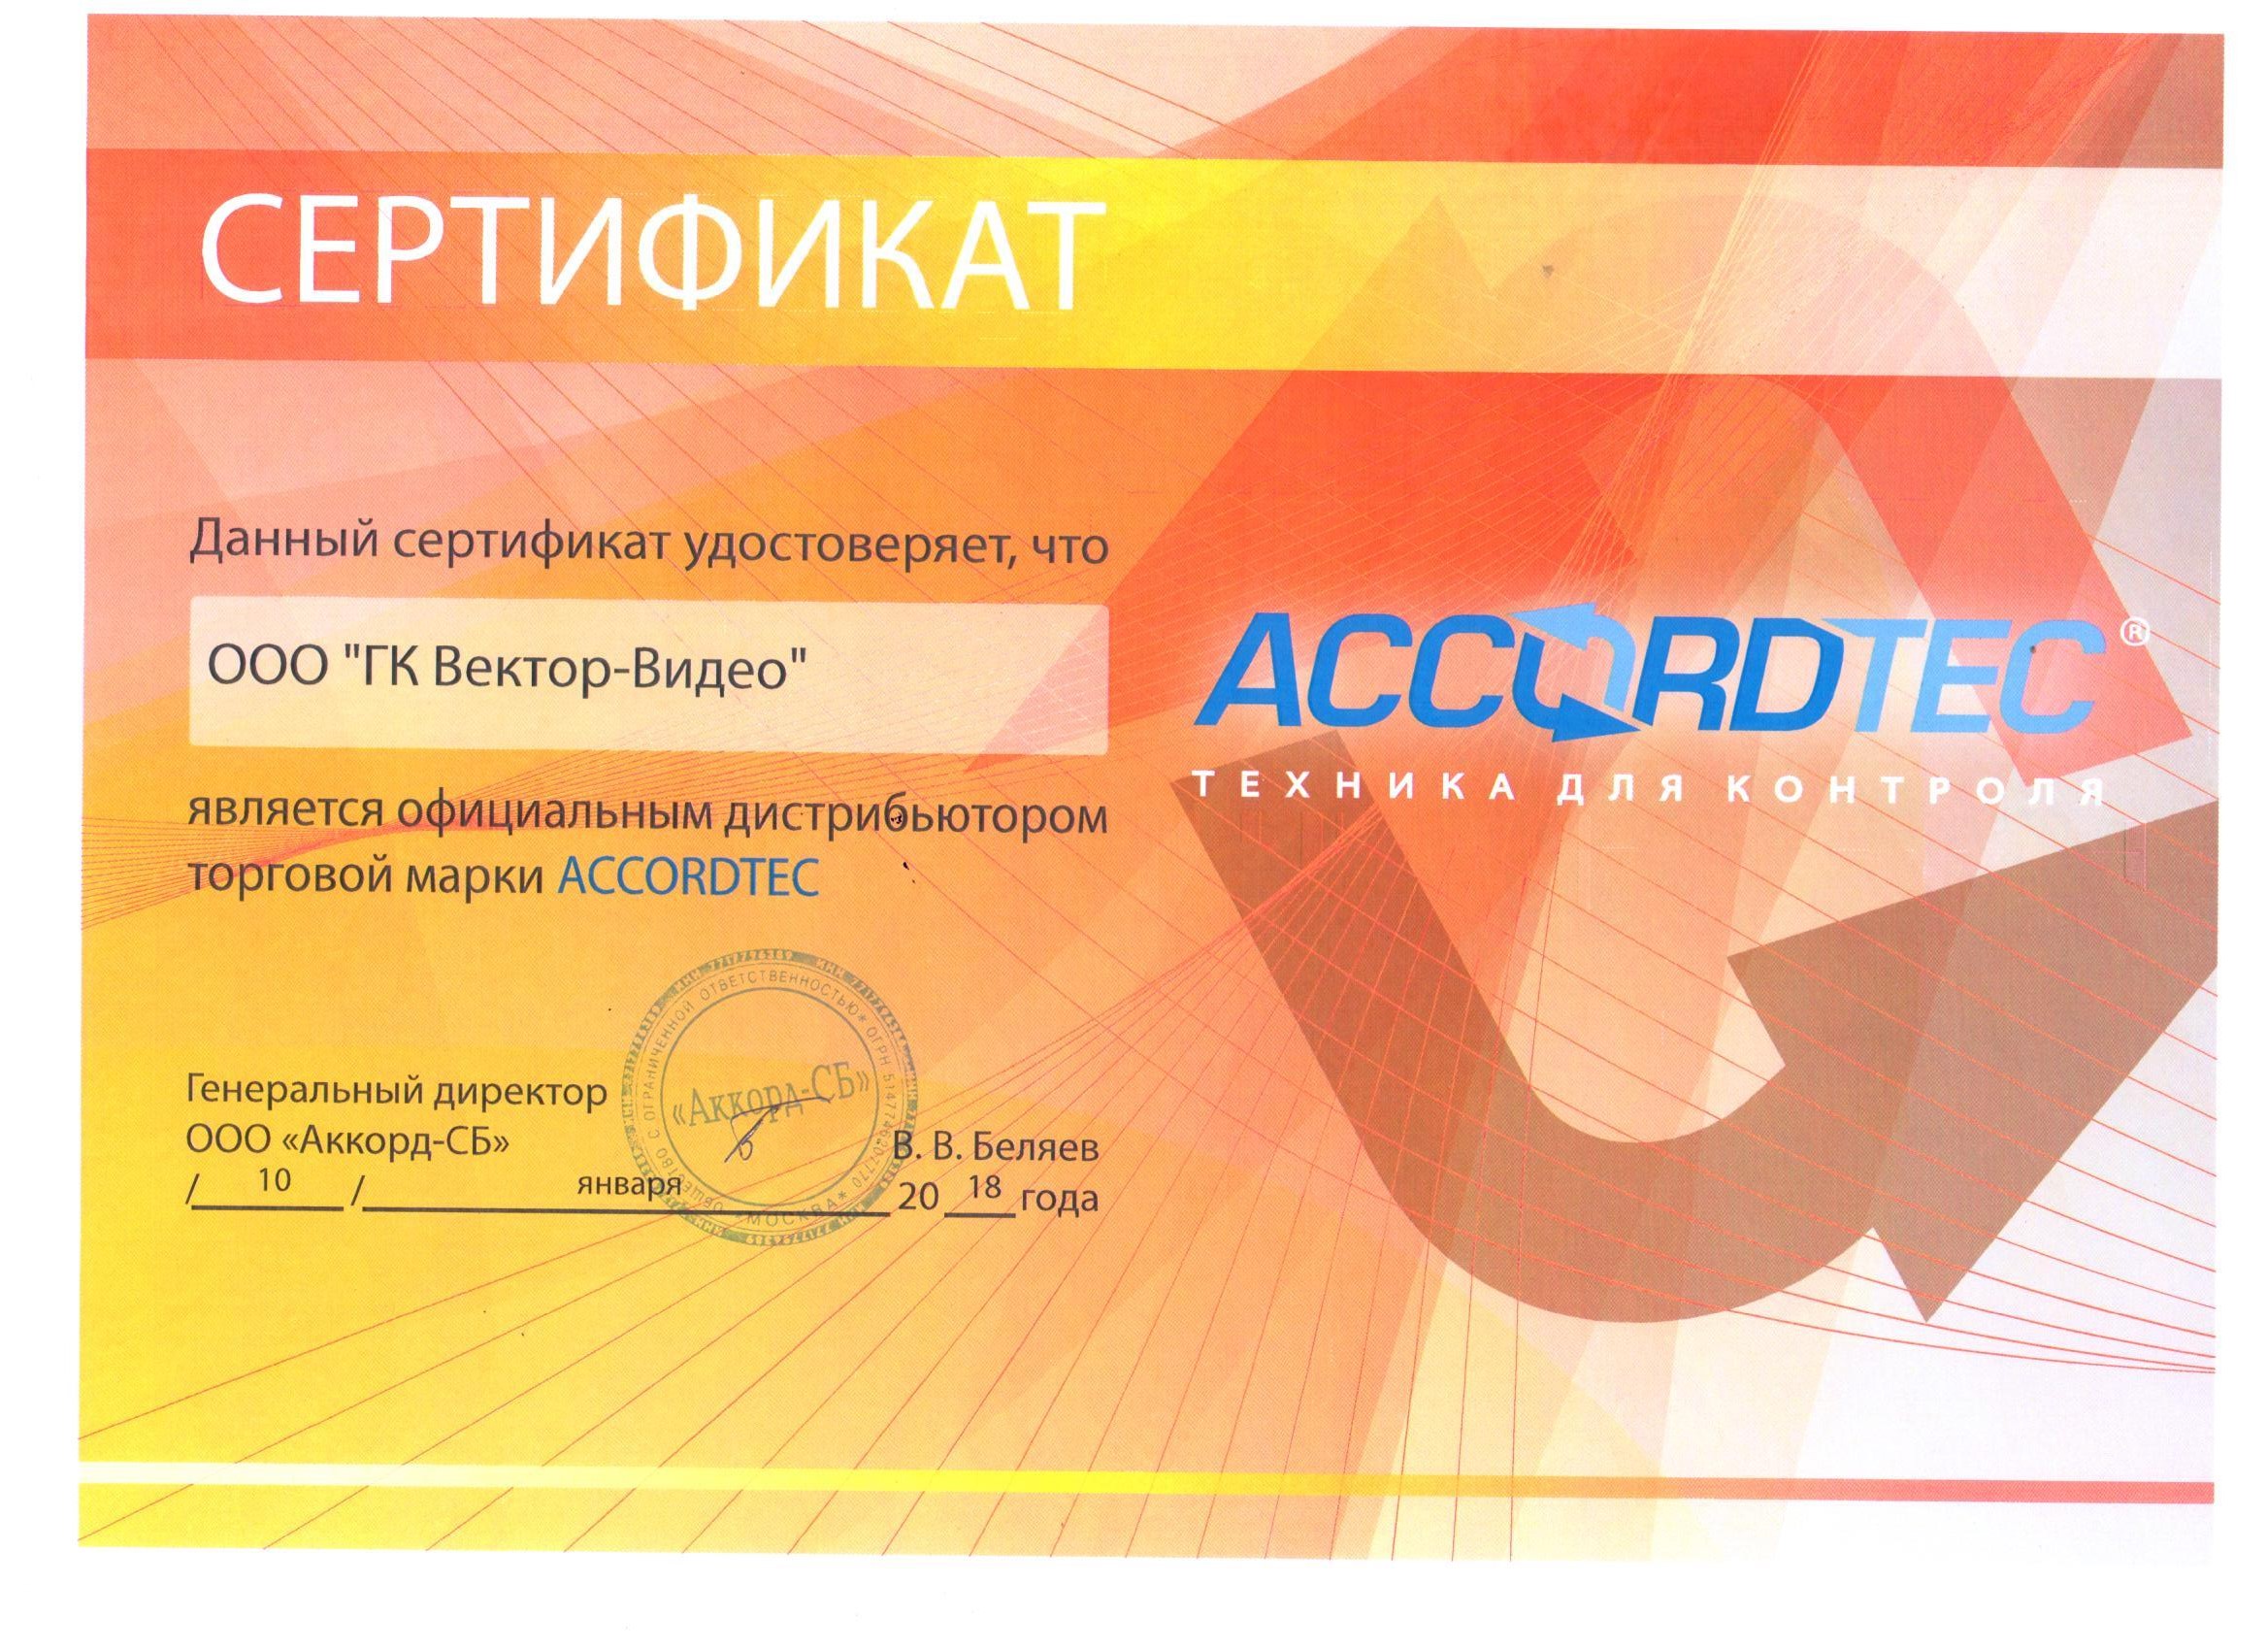 Сертификат дилера Accordtec